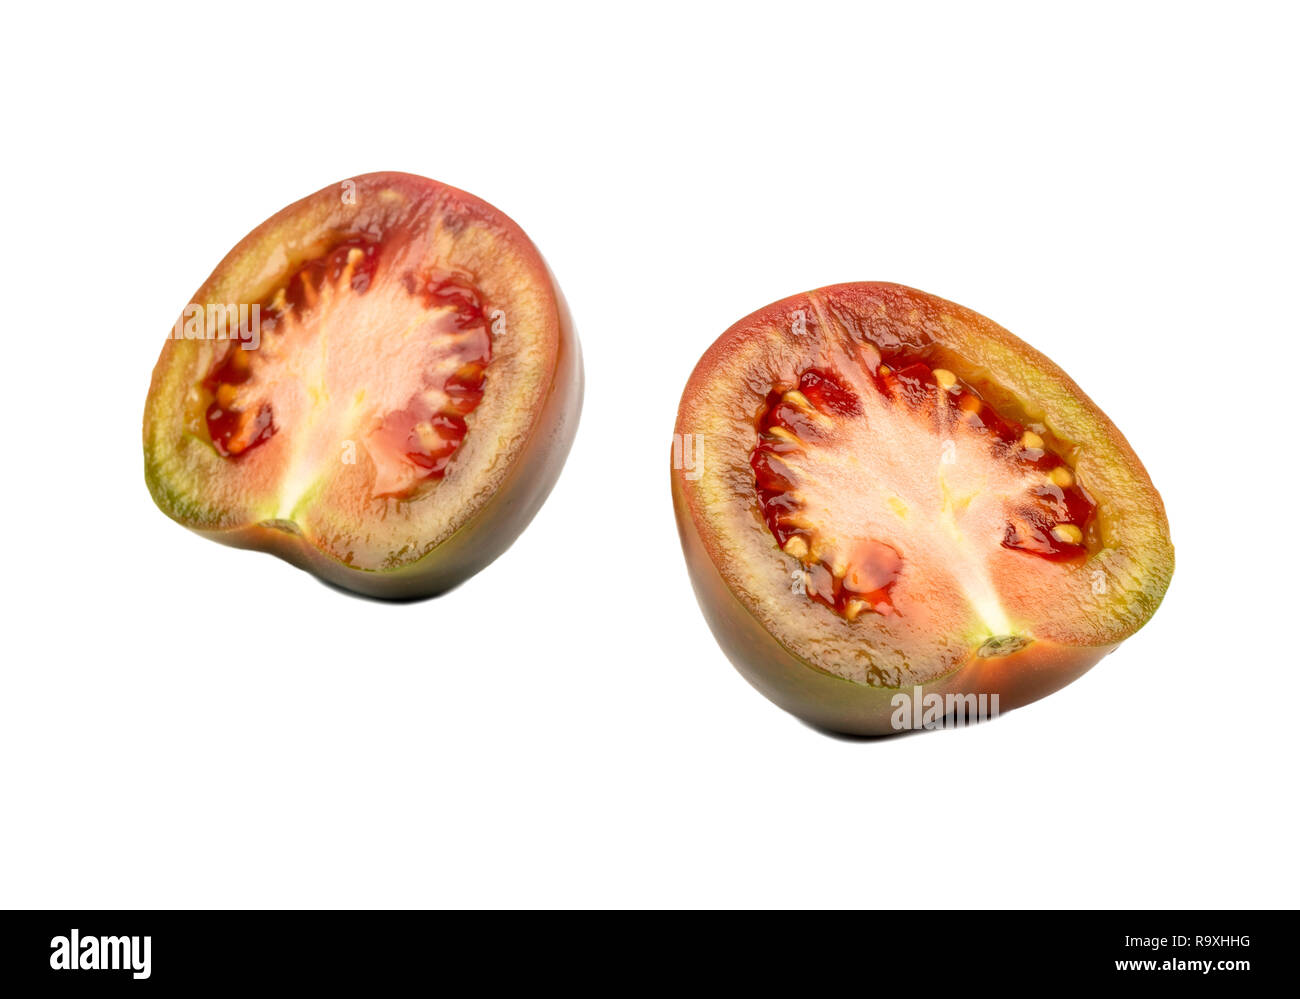 Zwei Hälften eines frischen Tomaten kumato auf weißem Hintergrund Stockfoto